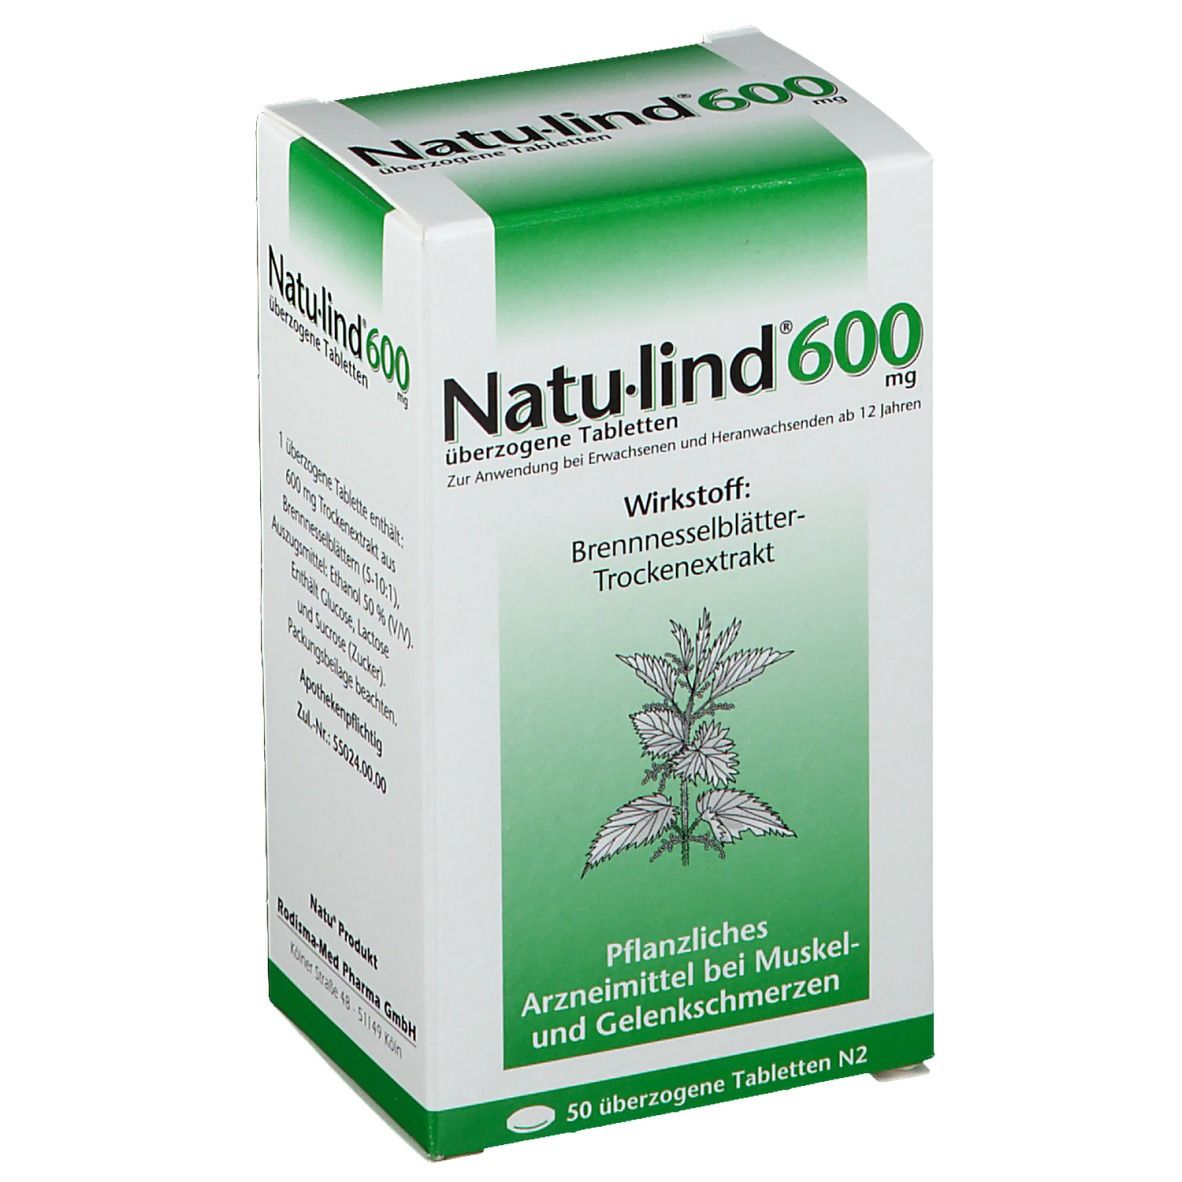 Natu-lind® 600 mg